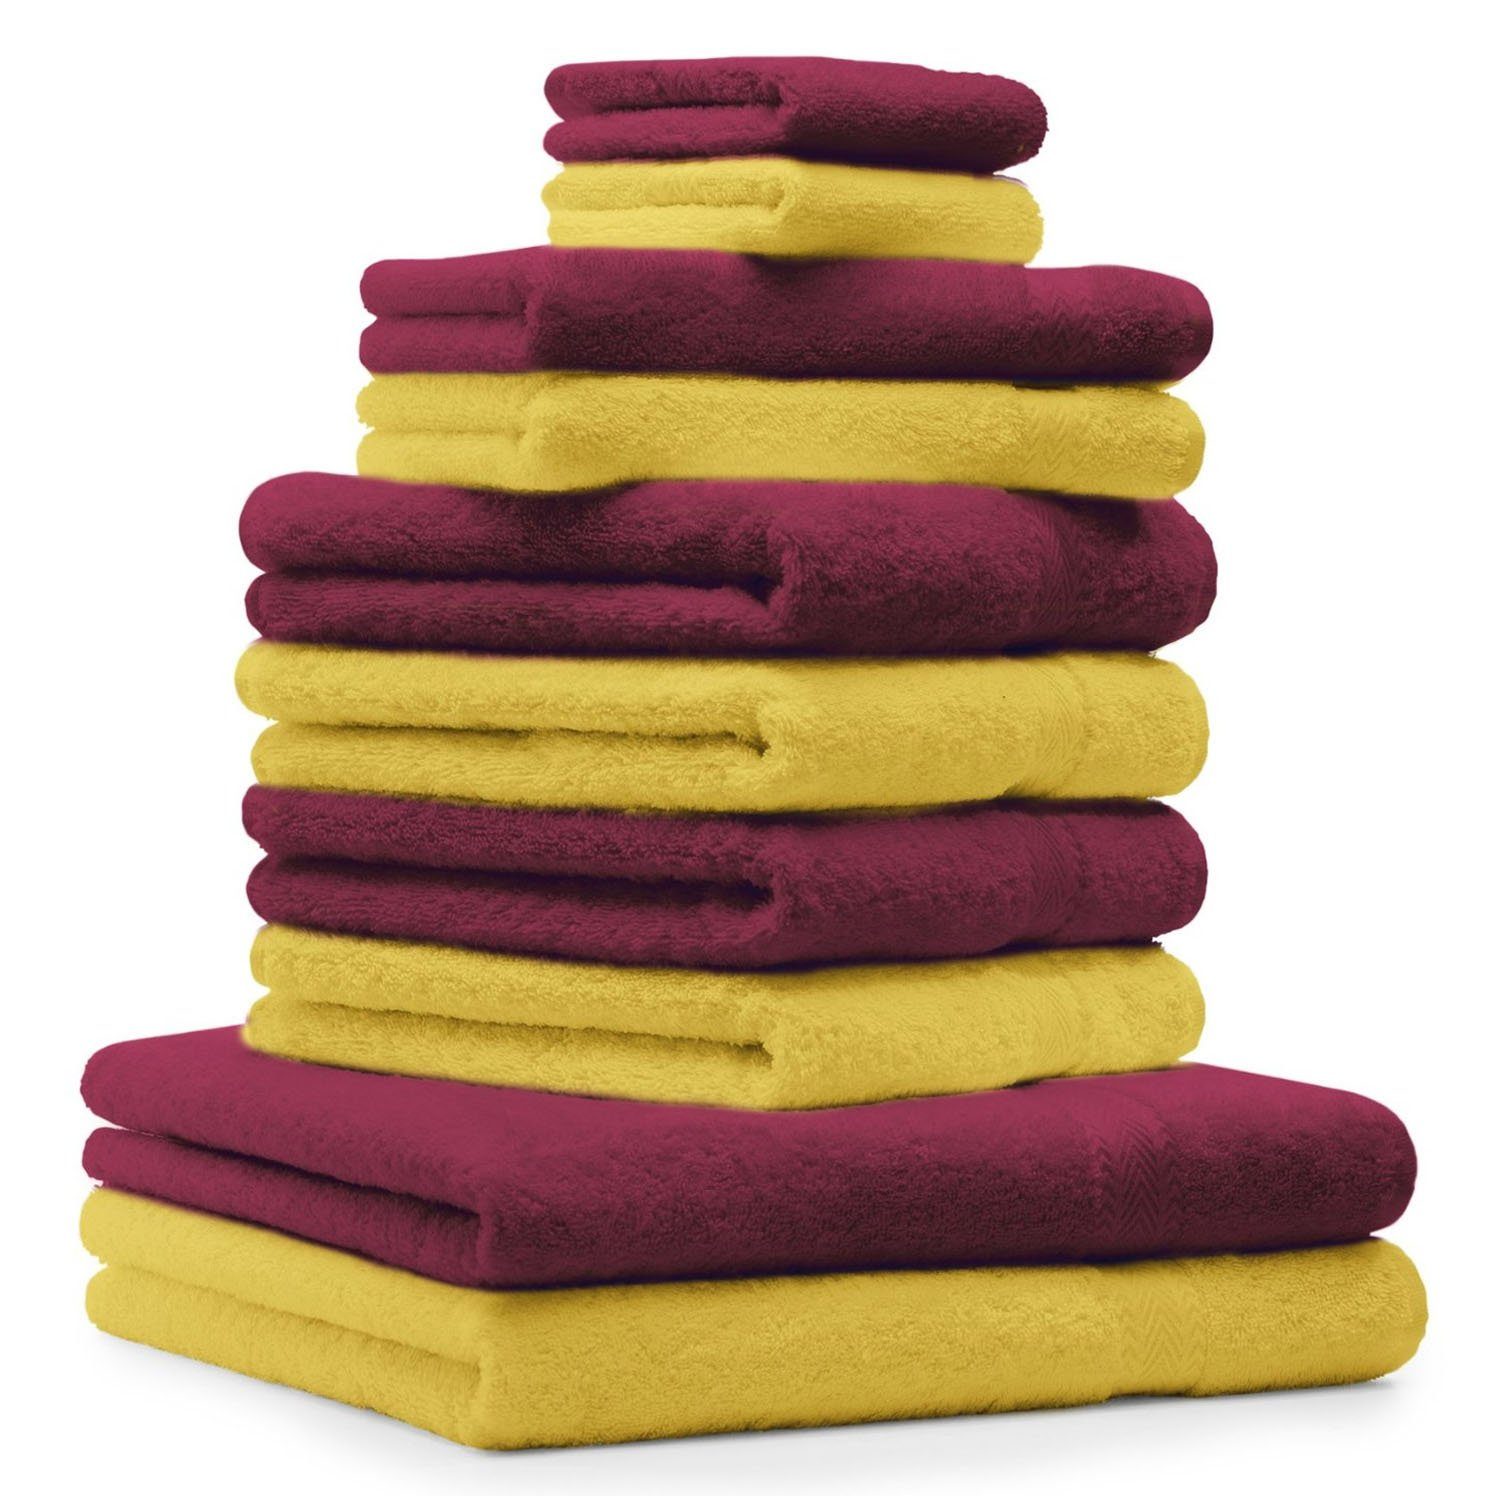 Betz Handtuch Set 10-TLG. Handtuch-Set Farbe gelb und dunkelrot, 100% Baumwolle